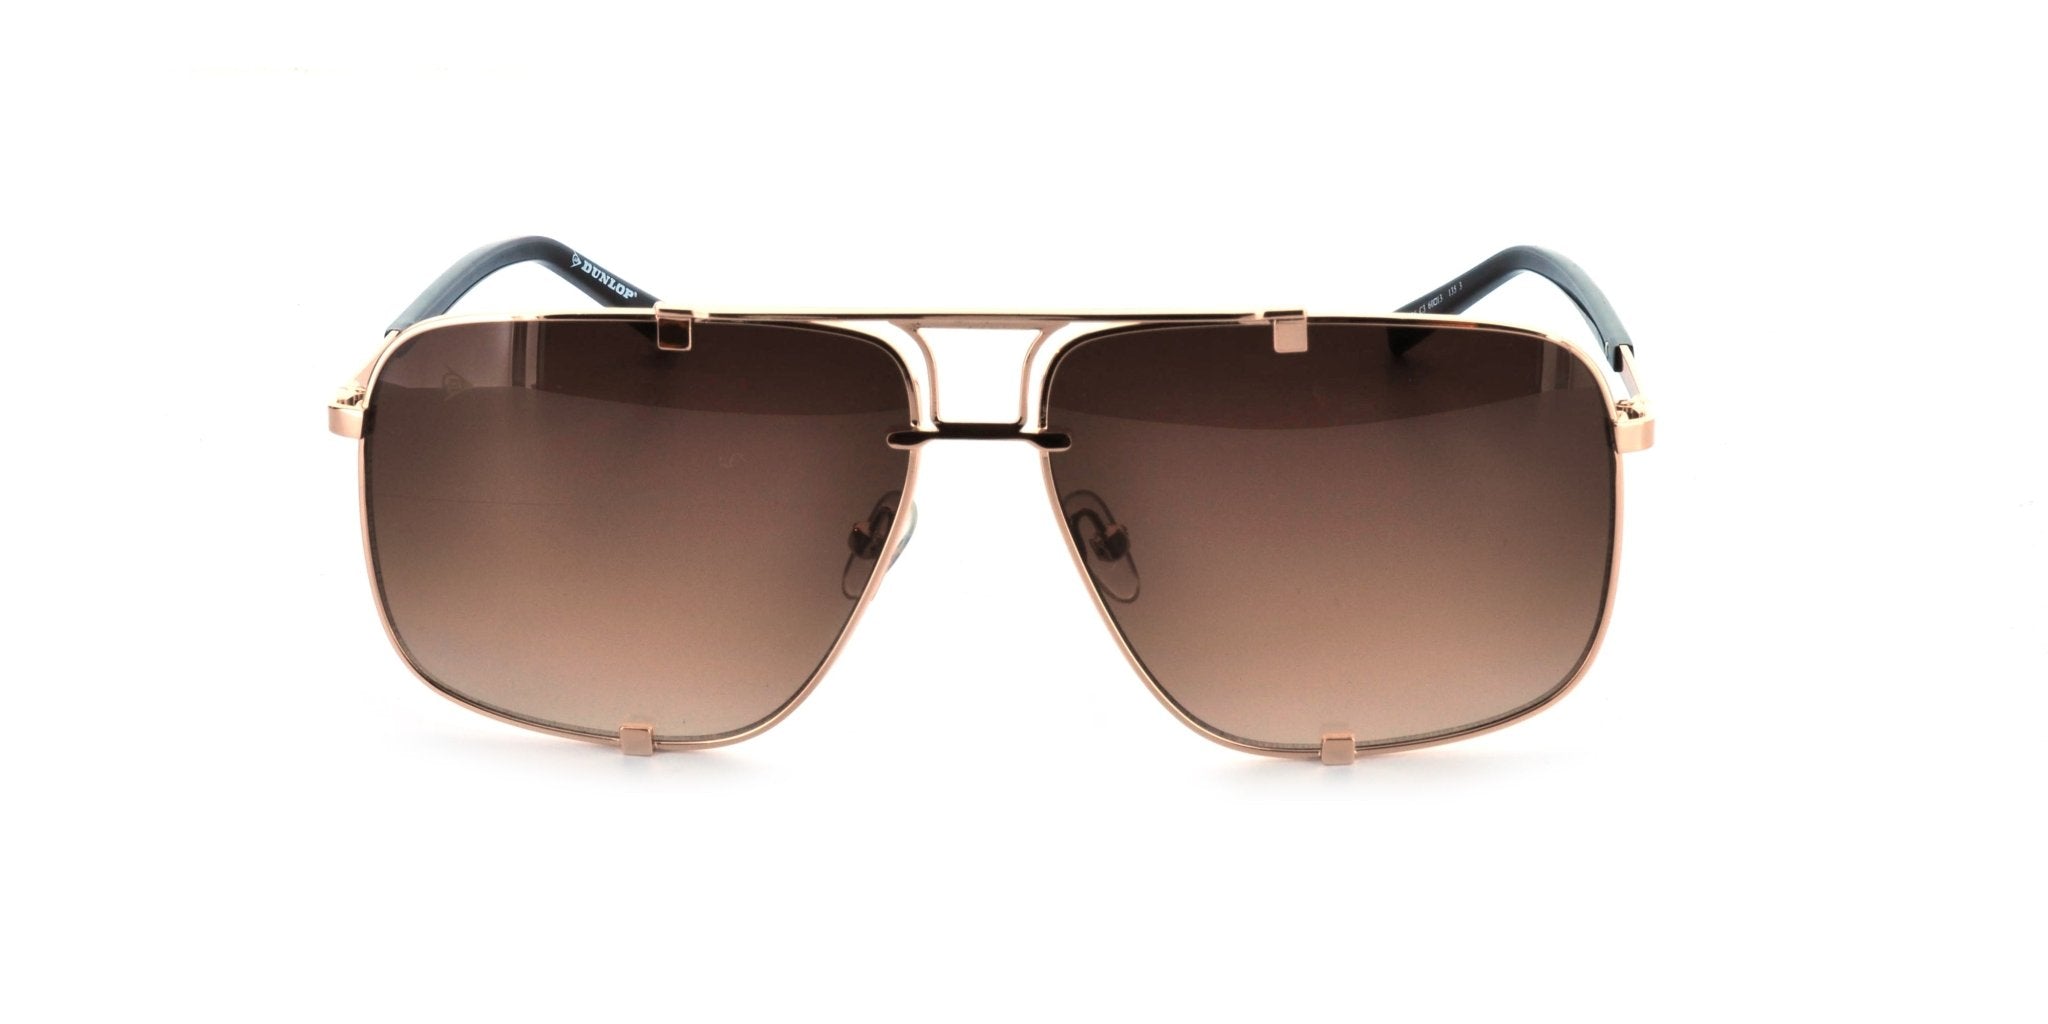 Takreem - DG-3536-C3 Men's Sunglasses: Exquisite Style and Sun Protection - #shoTakreem - DG-3536-C3 Men's Sunglasses: Exquisite Style and Sun Protectionp_name#Takreem - DG-3536-C3 Men's Sunglasses: Exquisite Style and Sun ProtectionSunglassesDunlopTakreem.joDG 3536 c3BrownStainless SteelMenTakreem - DG-3536-C3 Men's Sunglasses: Exquisite Style and Sun Protection - Takreem.jo